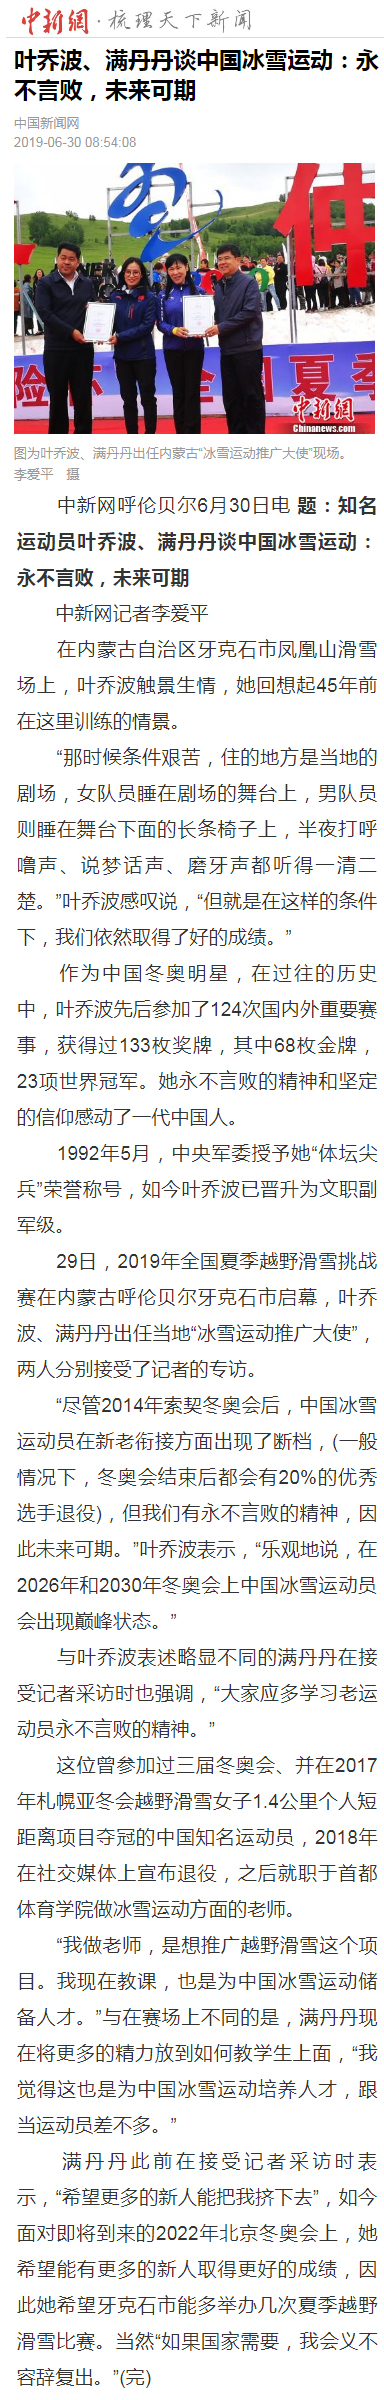 叶乔波、满丹丹谈中国冰雪运动：永不言败，未来可期.jpg